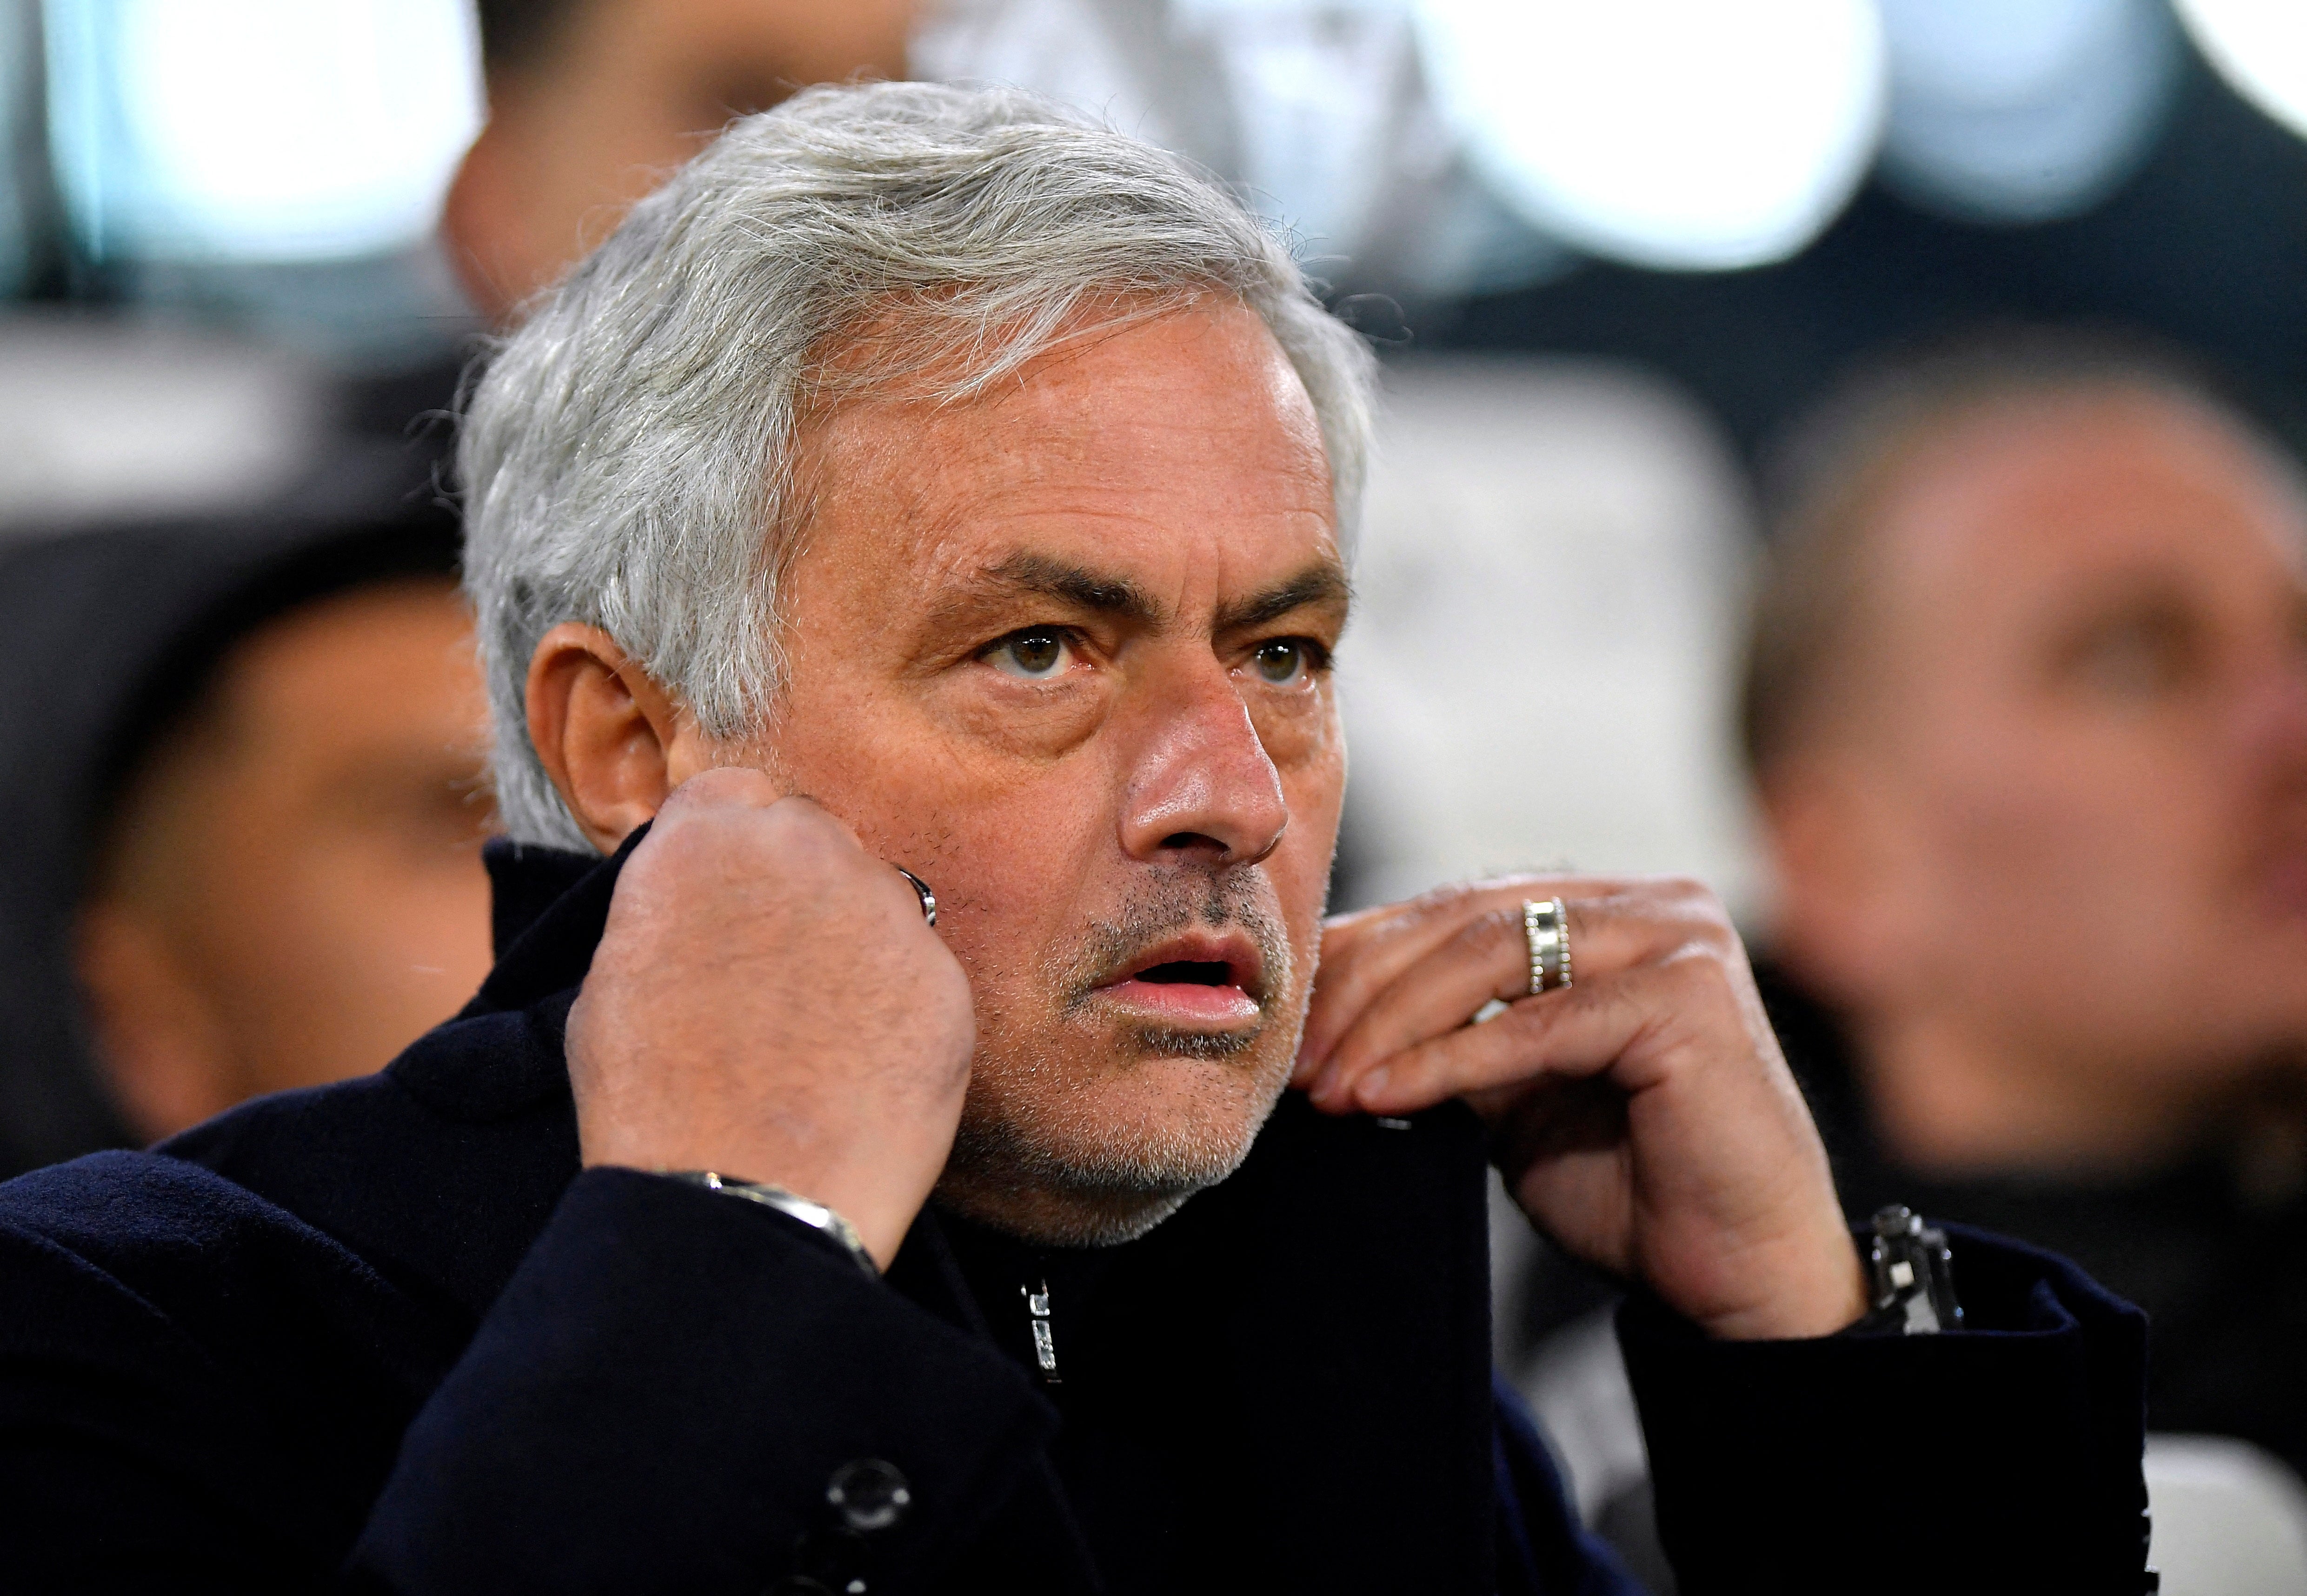 Jose Mourinho has a new managerial role